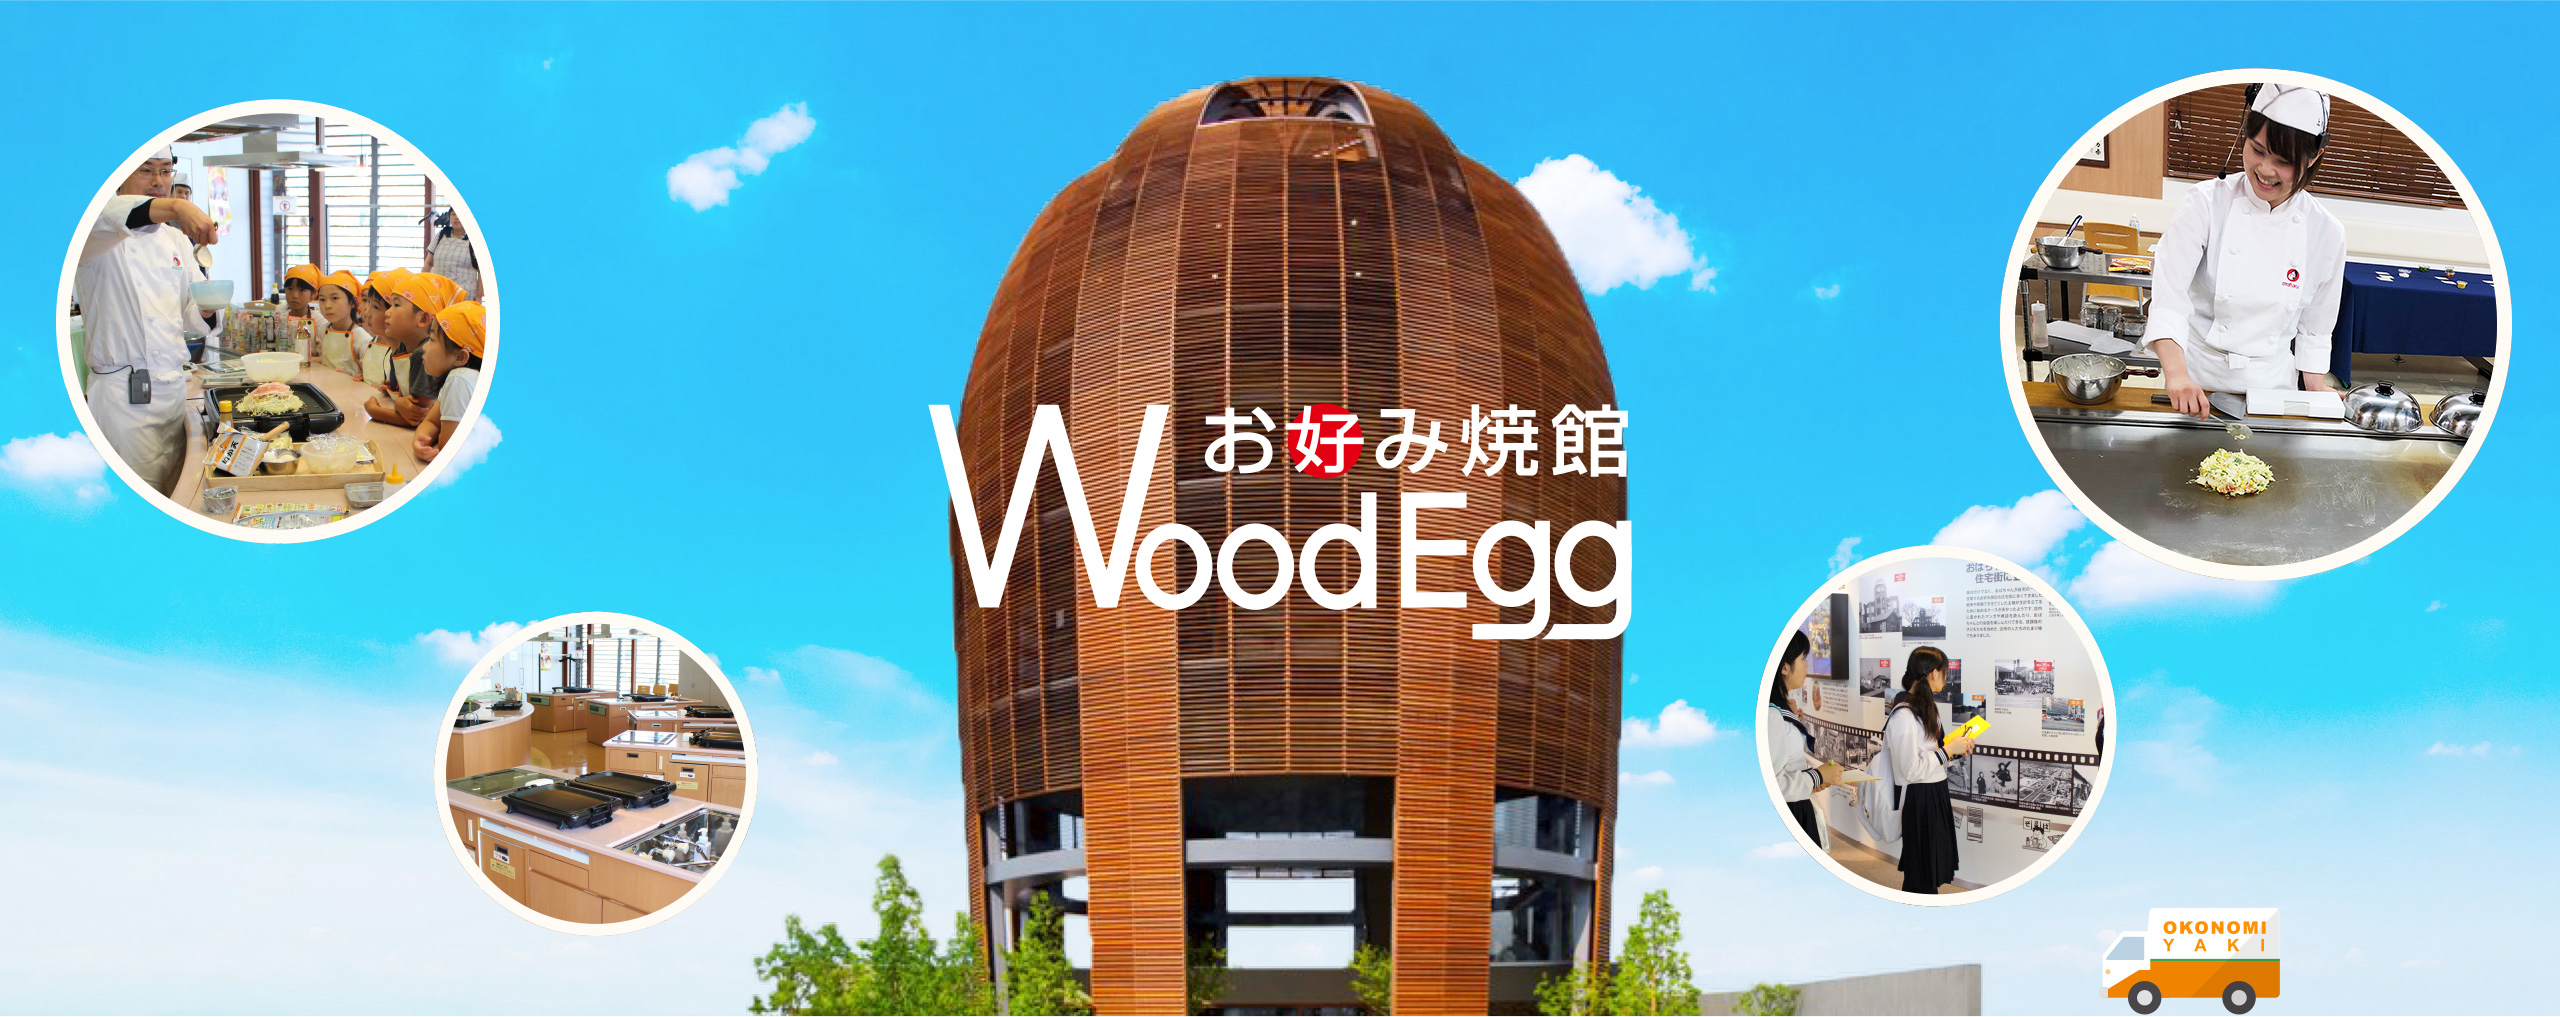 お好み焼館 Wood Egg